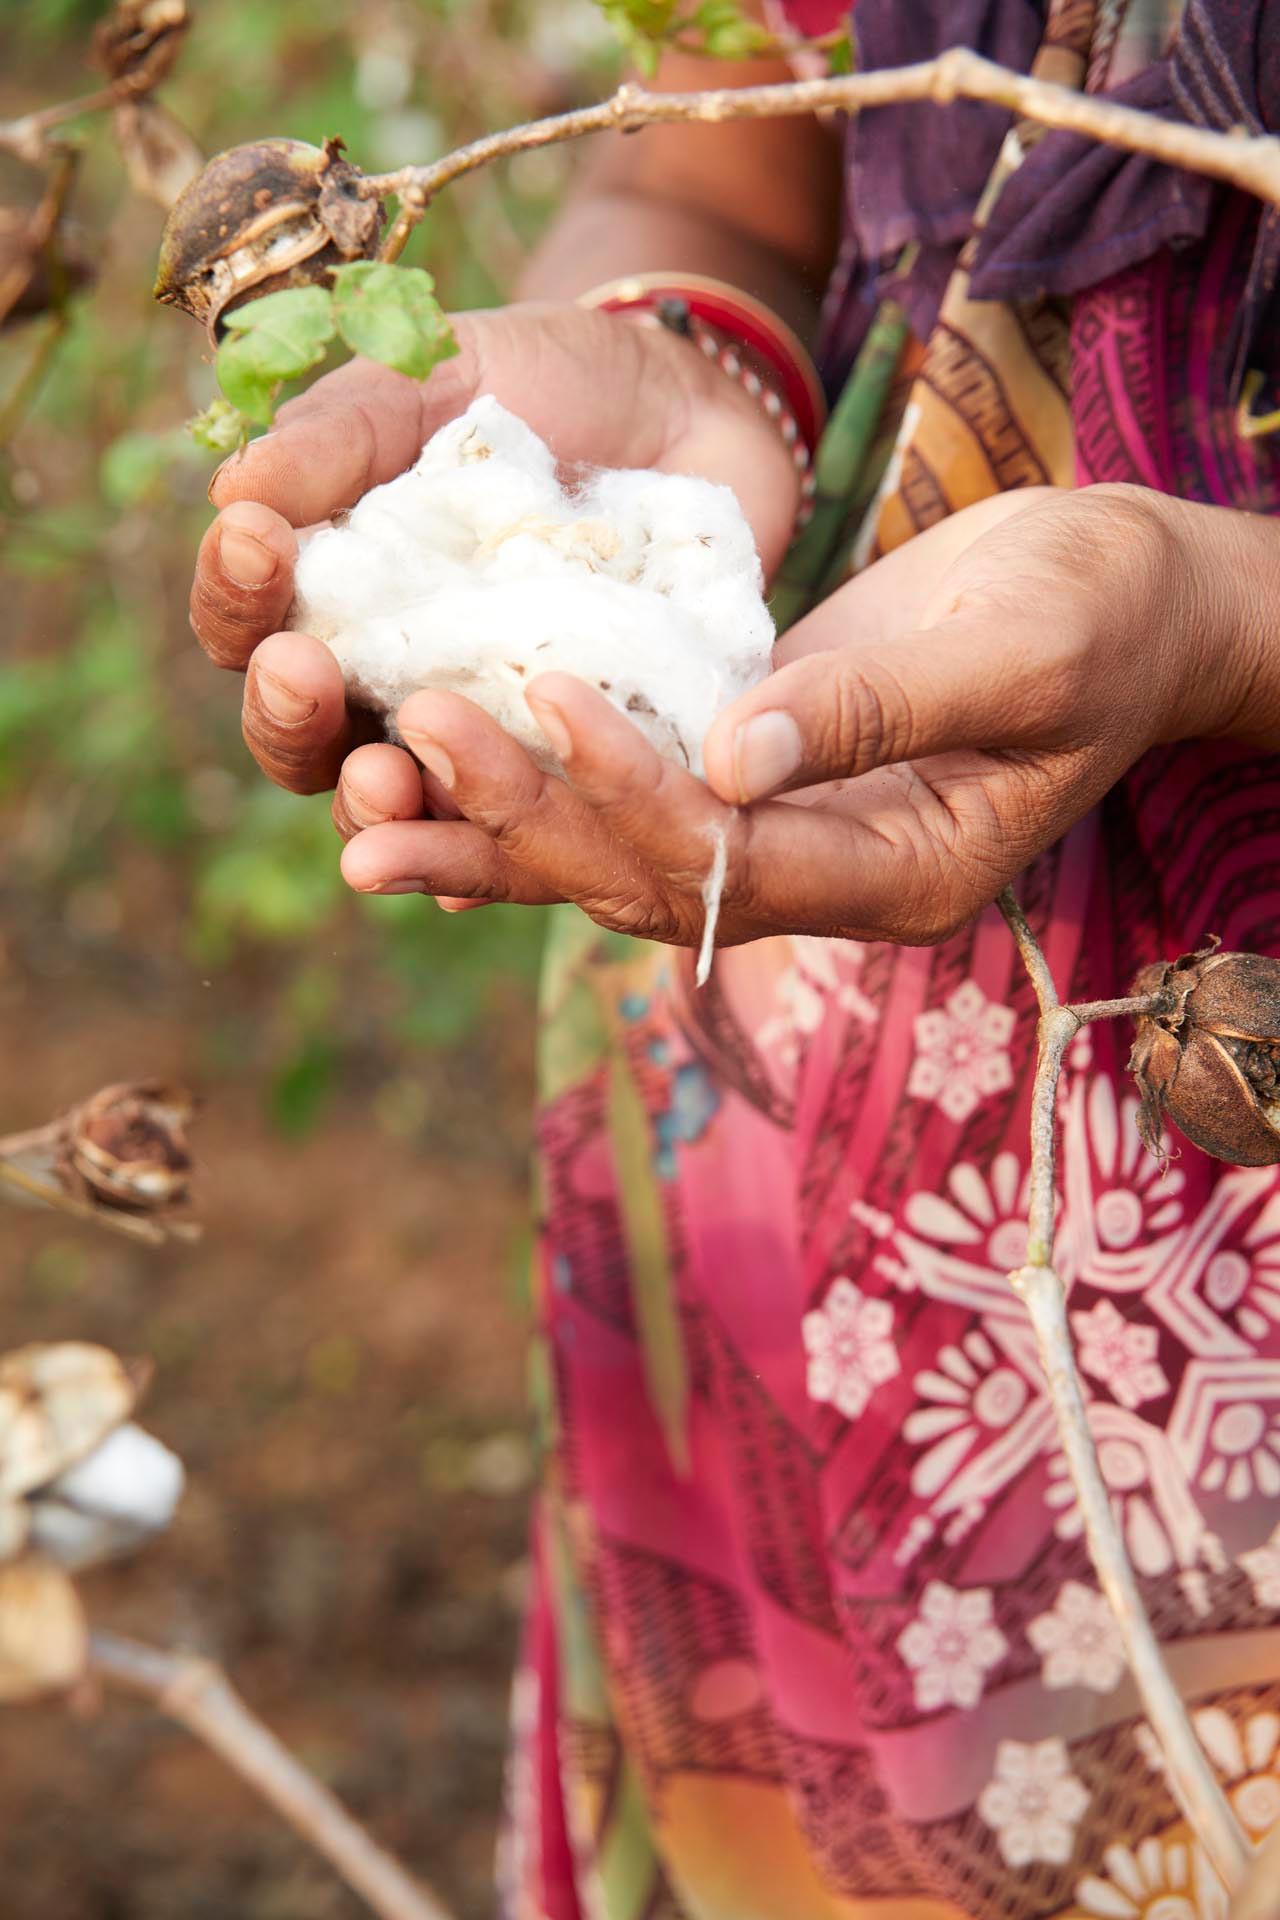 Spoznajte pridelovalko v okviru programa Primark Sustainable Cotton Programme – Primark Cares